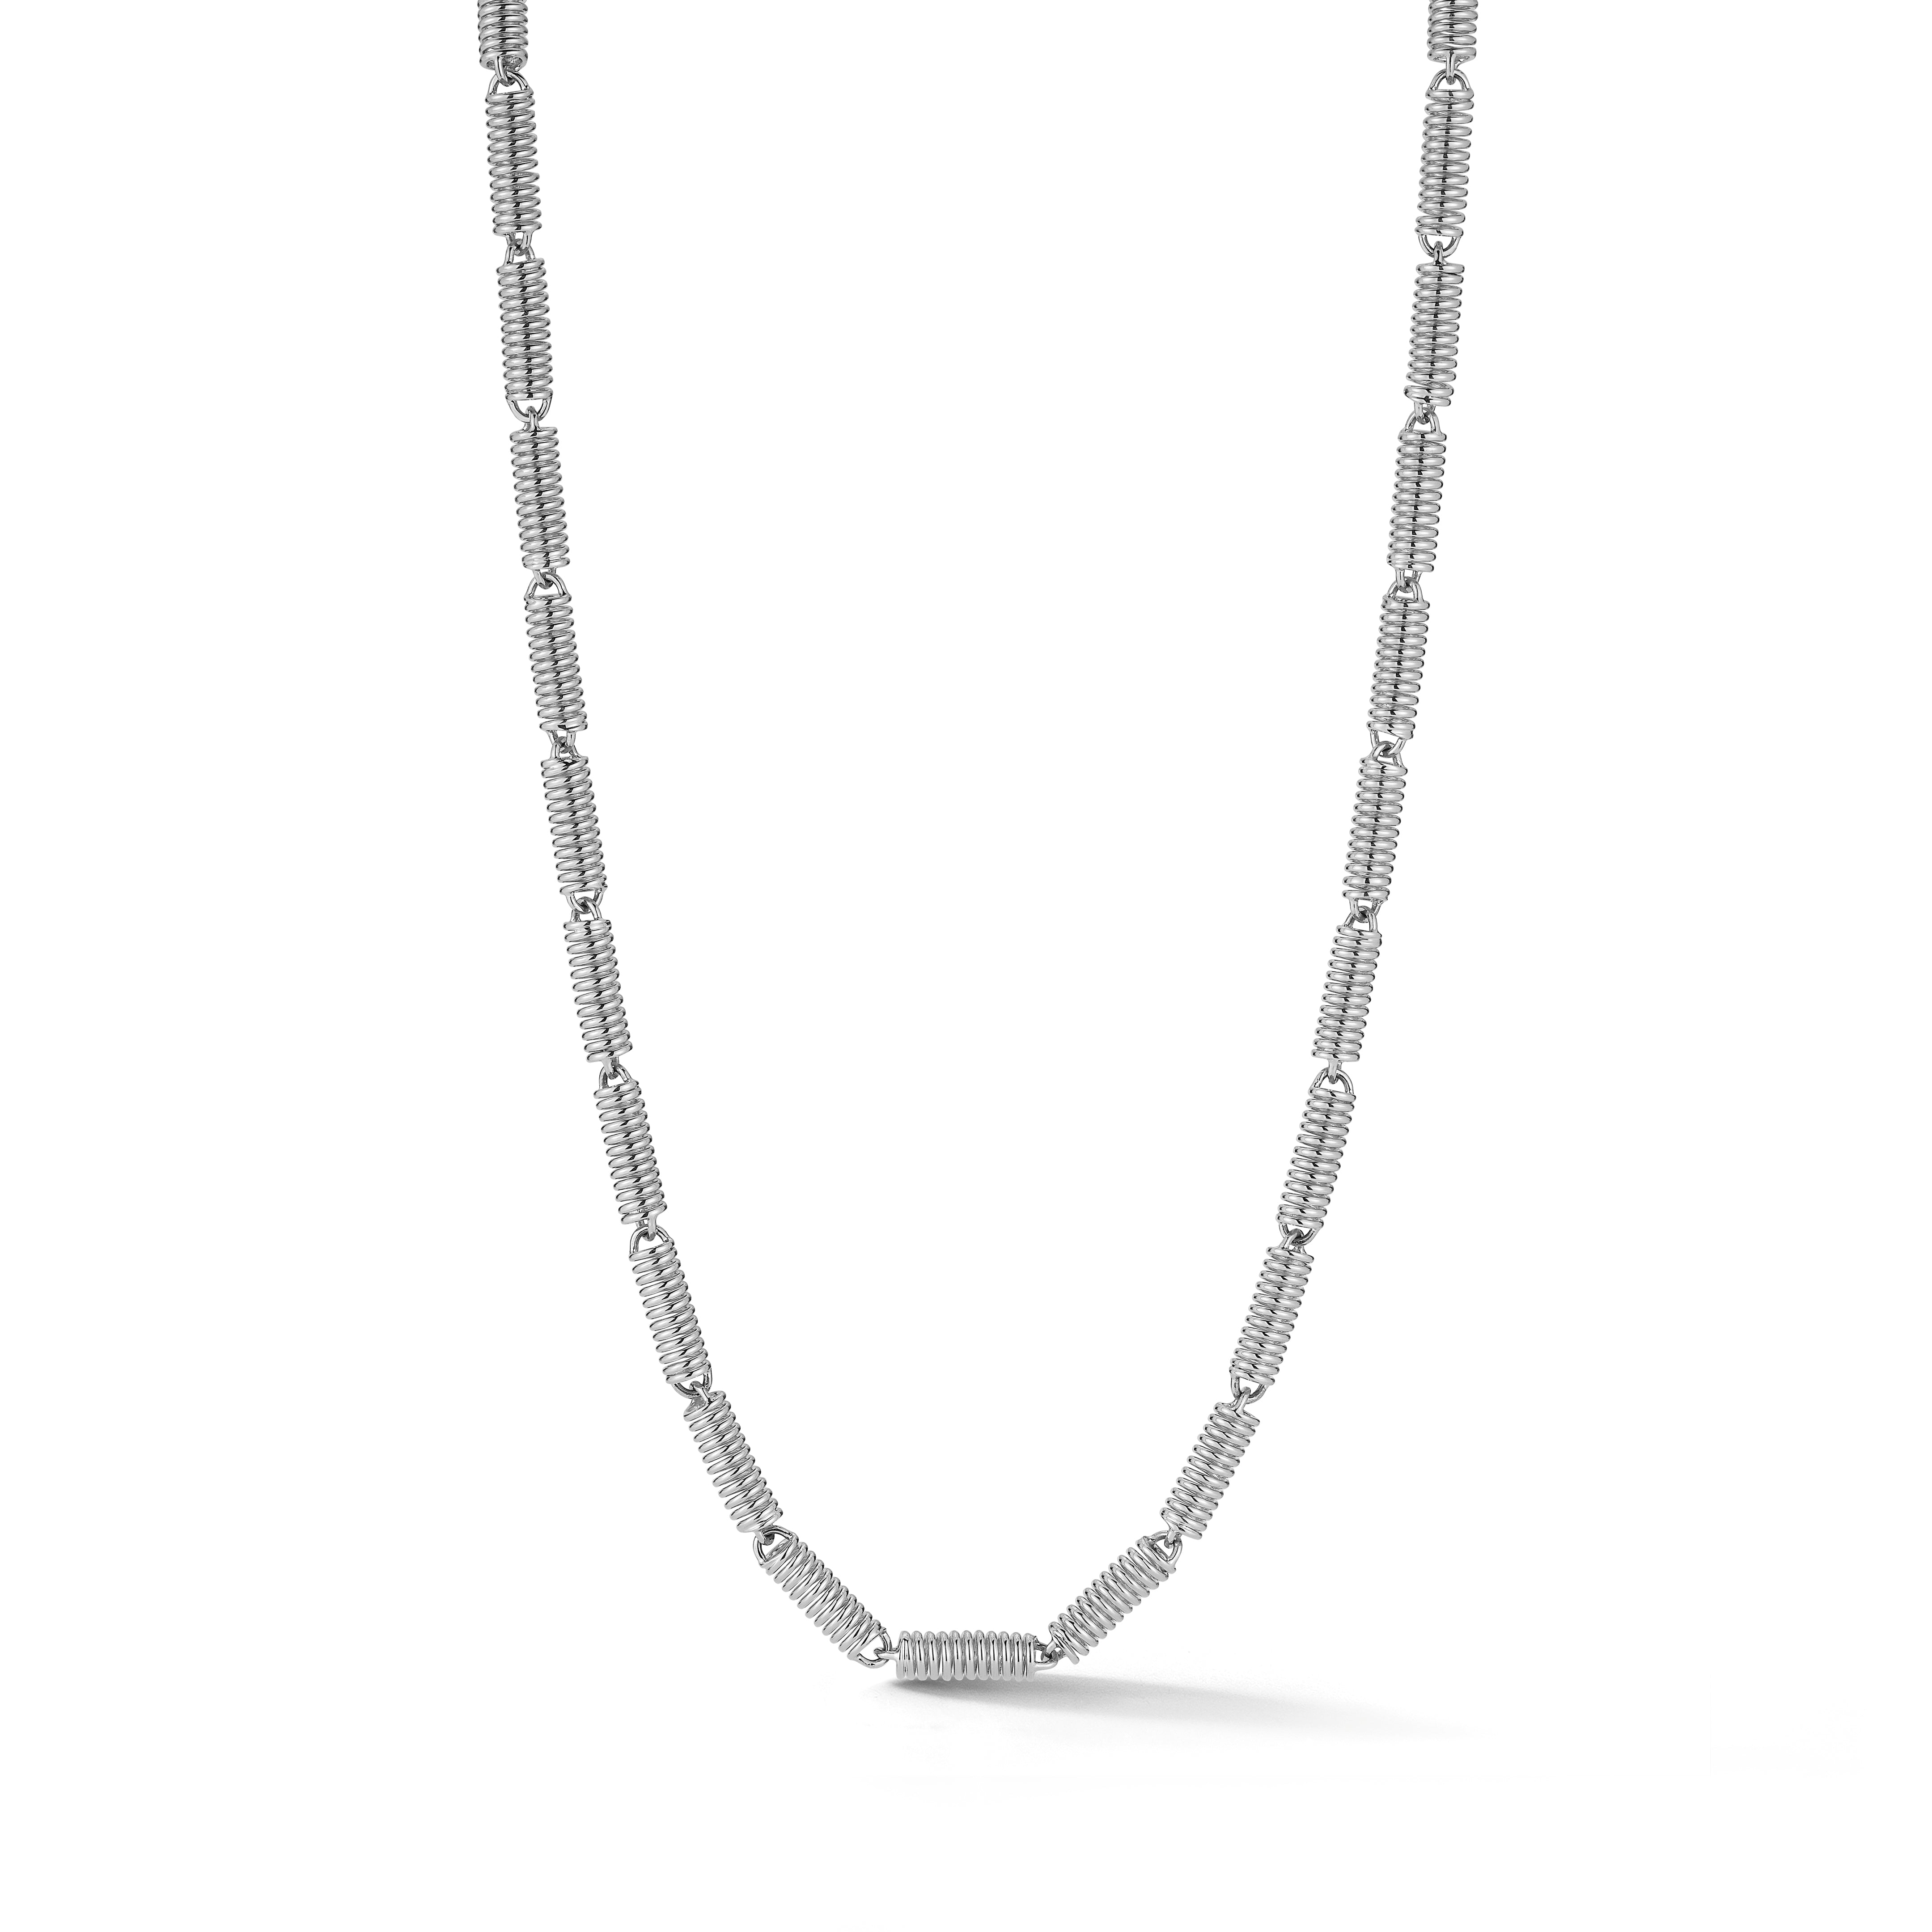 Small White Gold Verona Coil Chain Necklace